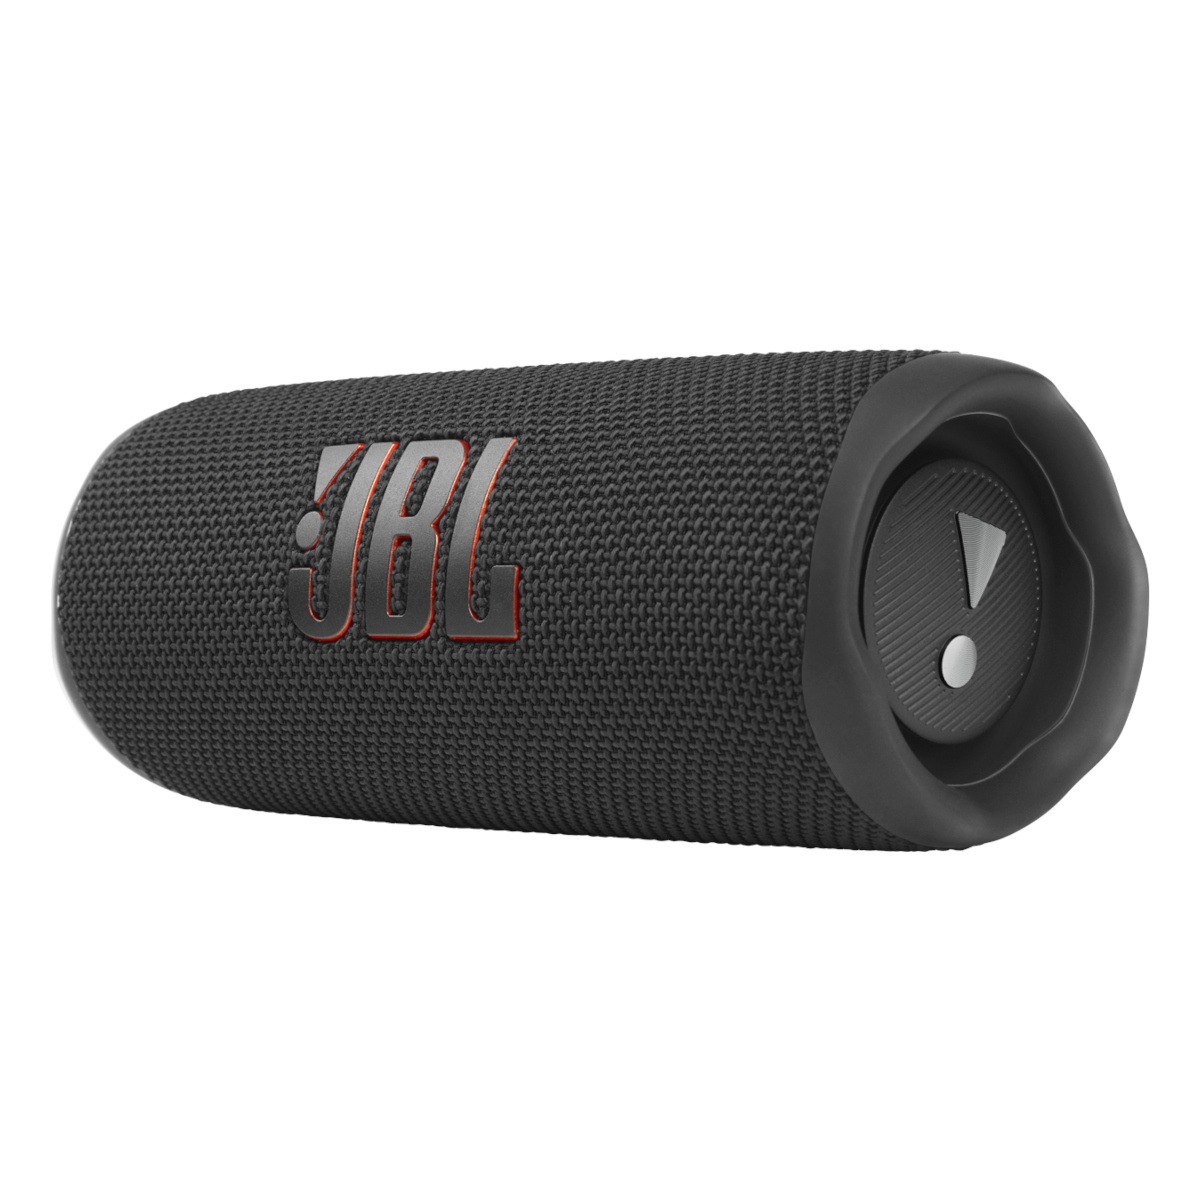 Głośnik Bluetooth JBL Flip 6 Czarny | Faktura VAT 23%